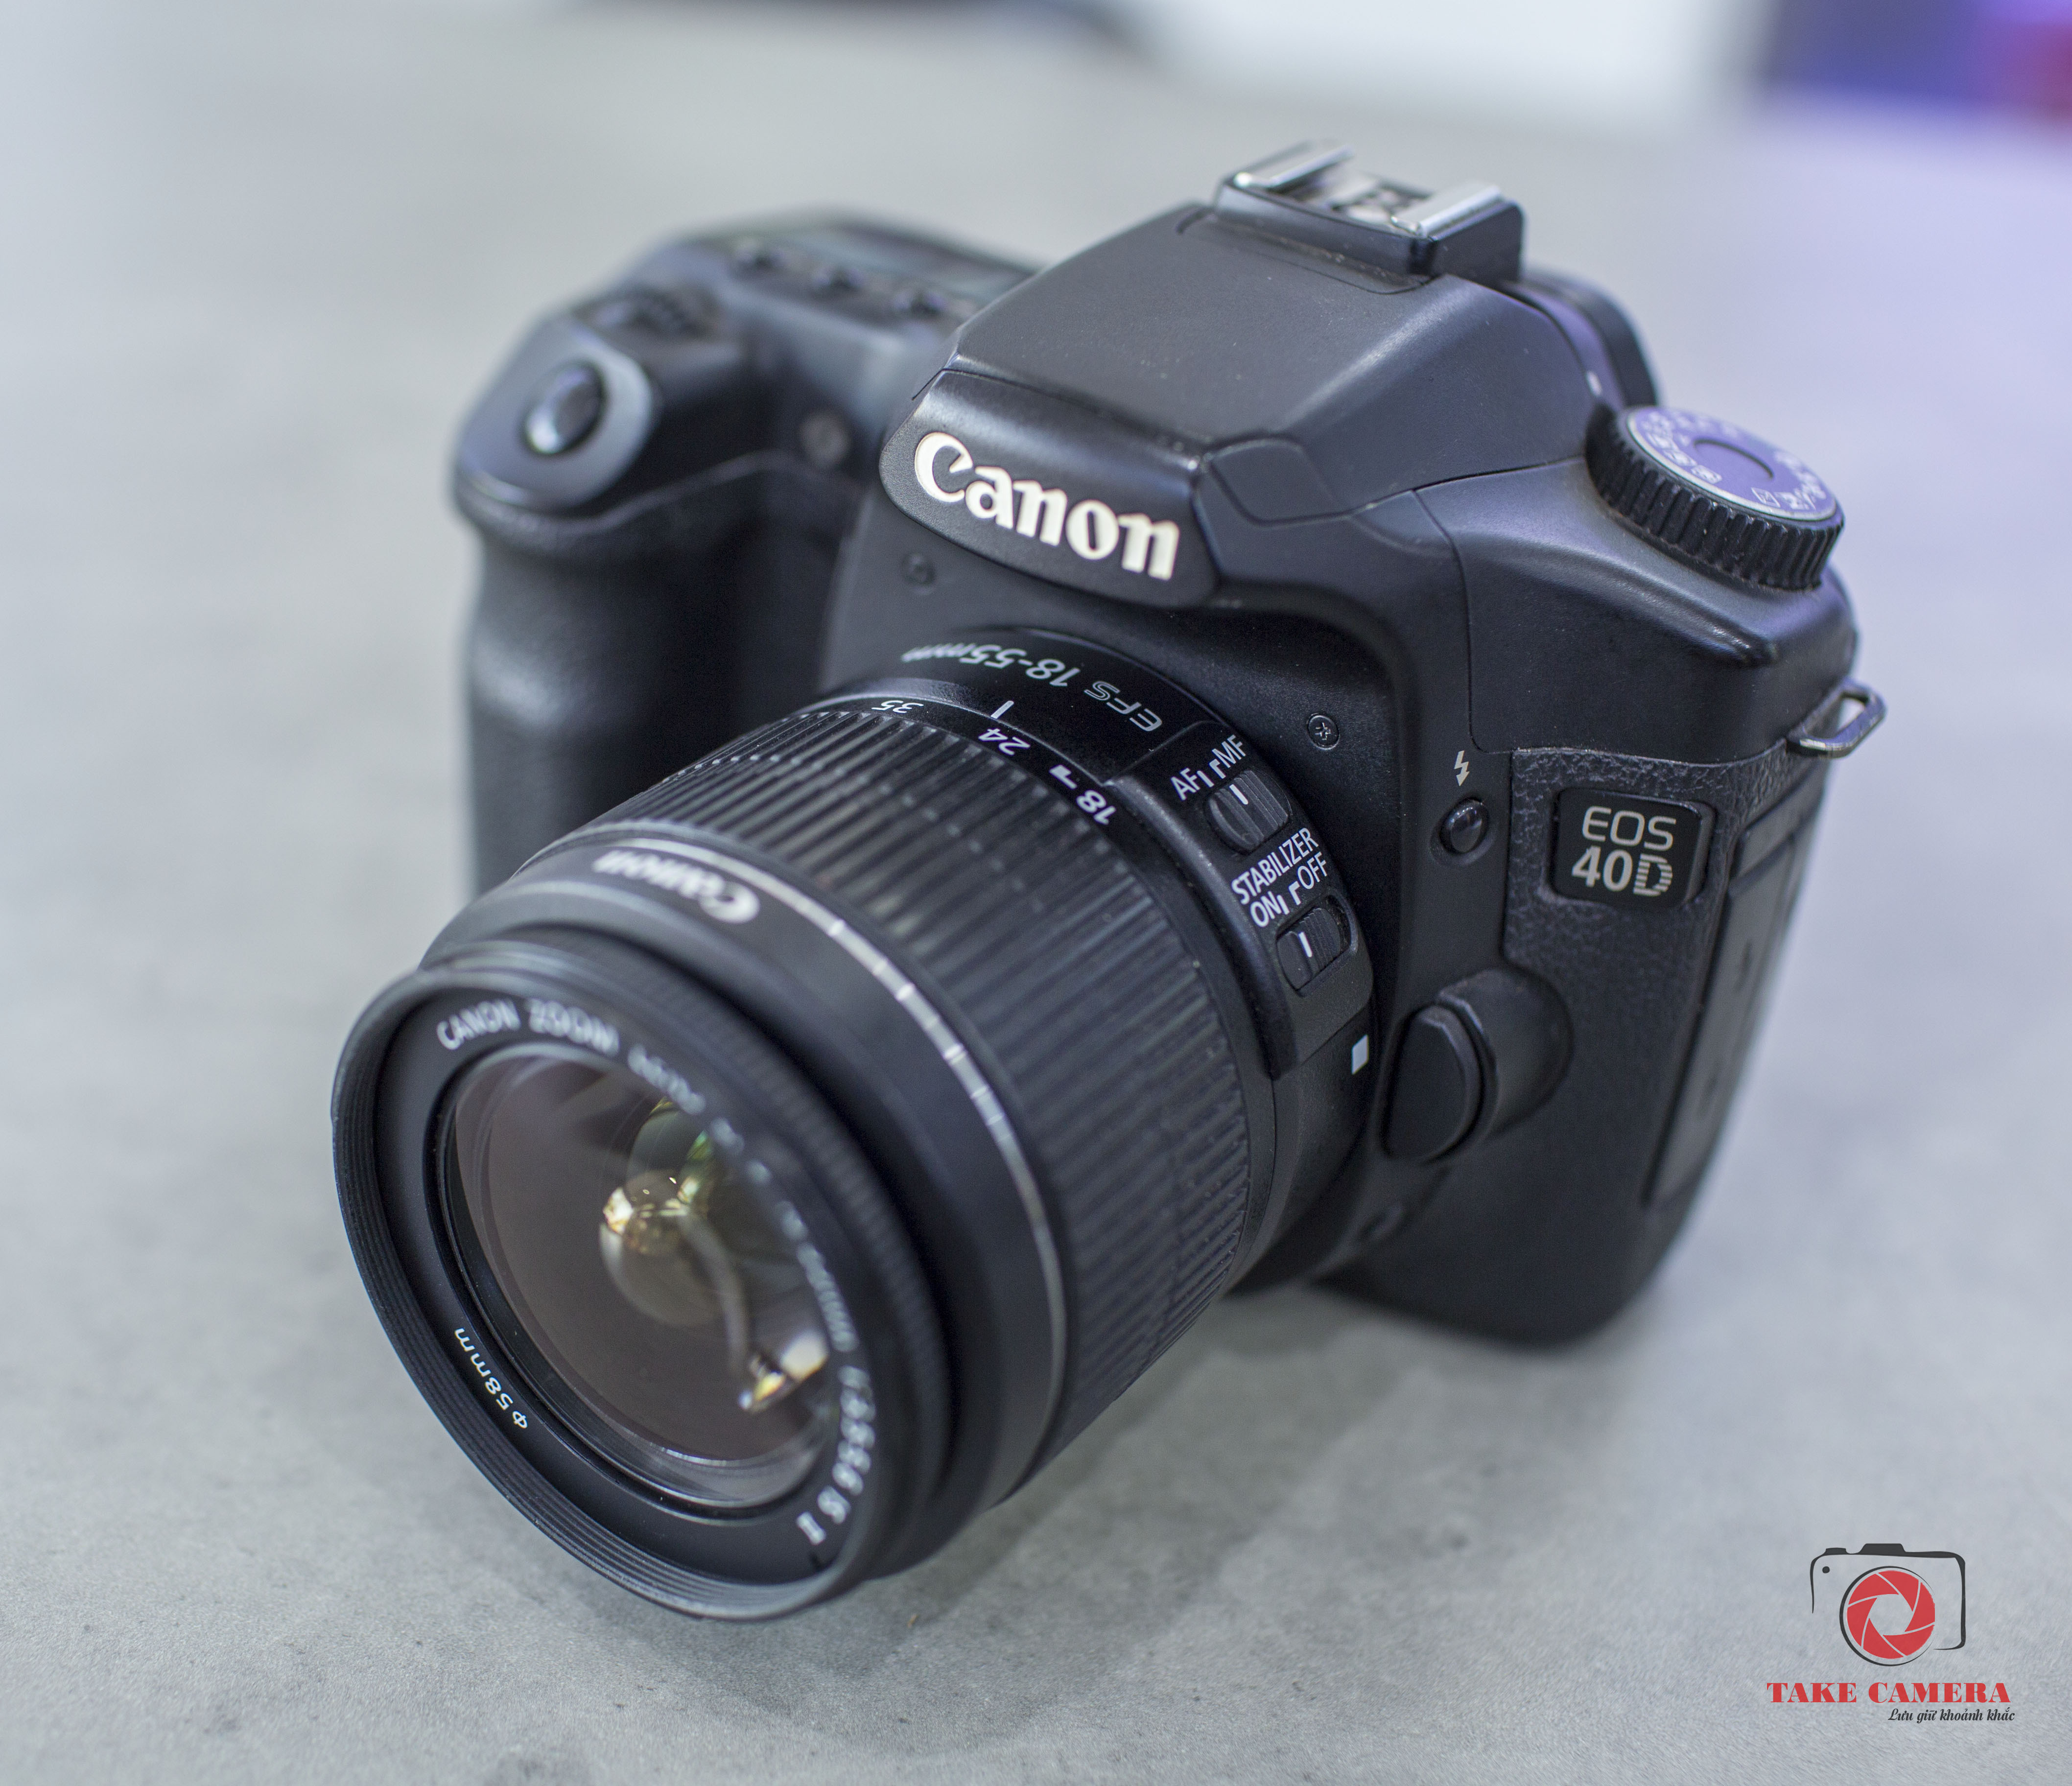 Máy ảnh DSLR Canon EOS 40D - 10.1 MP, EF-S 18-55 IS